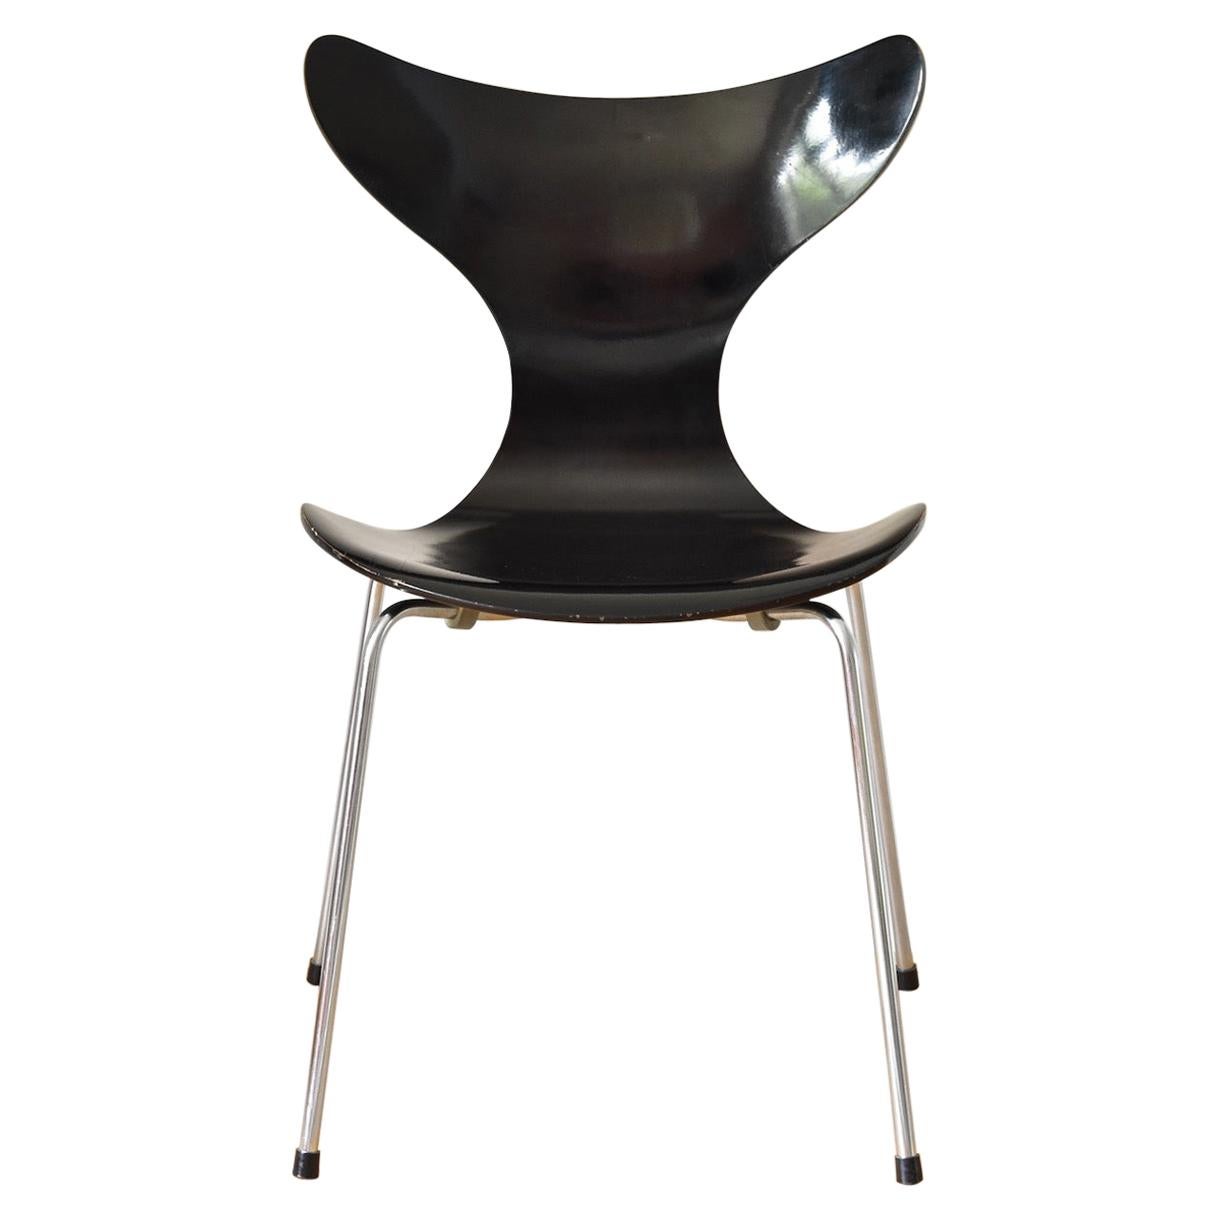 Vintage 3108 Seagull Dining Chair by Arne Jacobsen for Fritz Hansen, Denmark